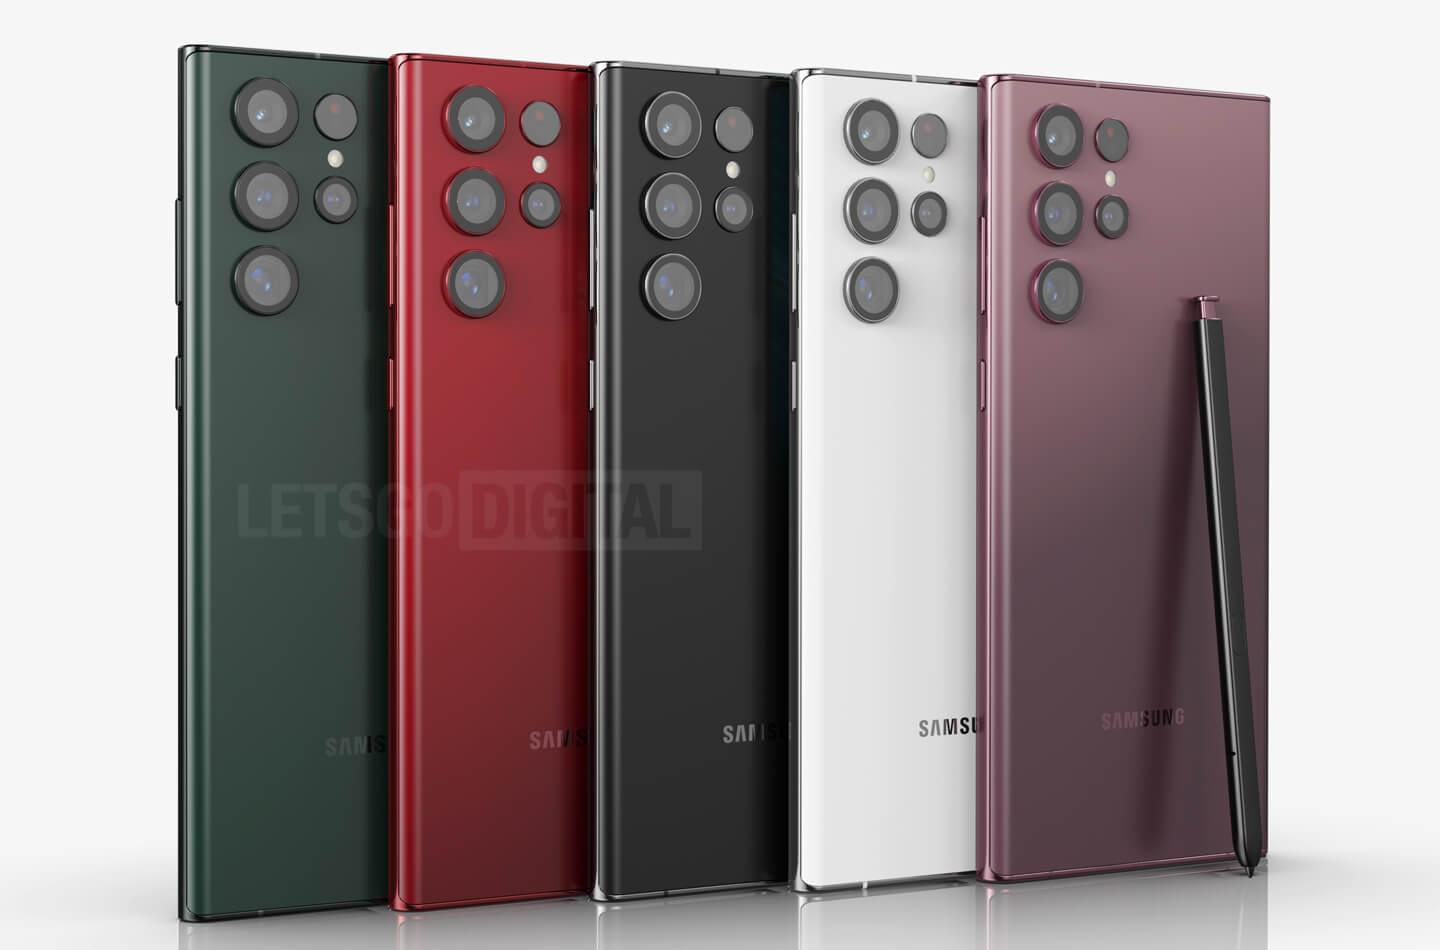 vis verbanning aankomst Samsung Galaxy S22 Ultra kopen in deze 5 kleuren | LetsGoDigital